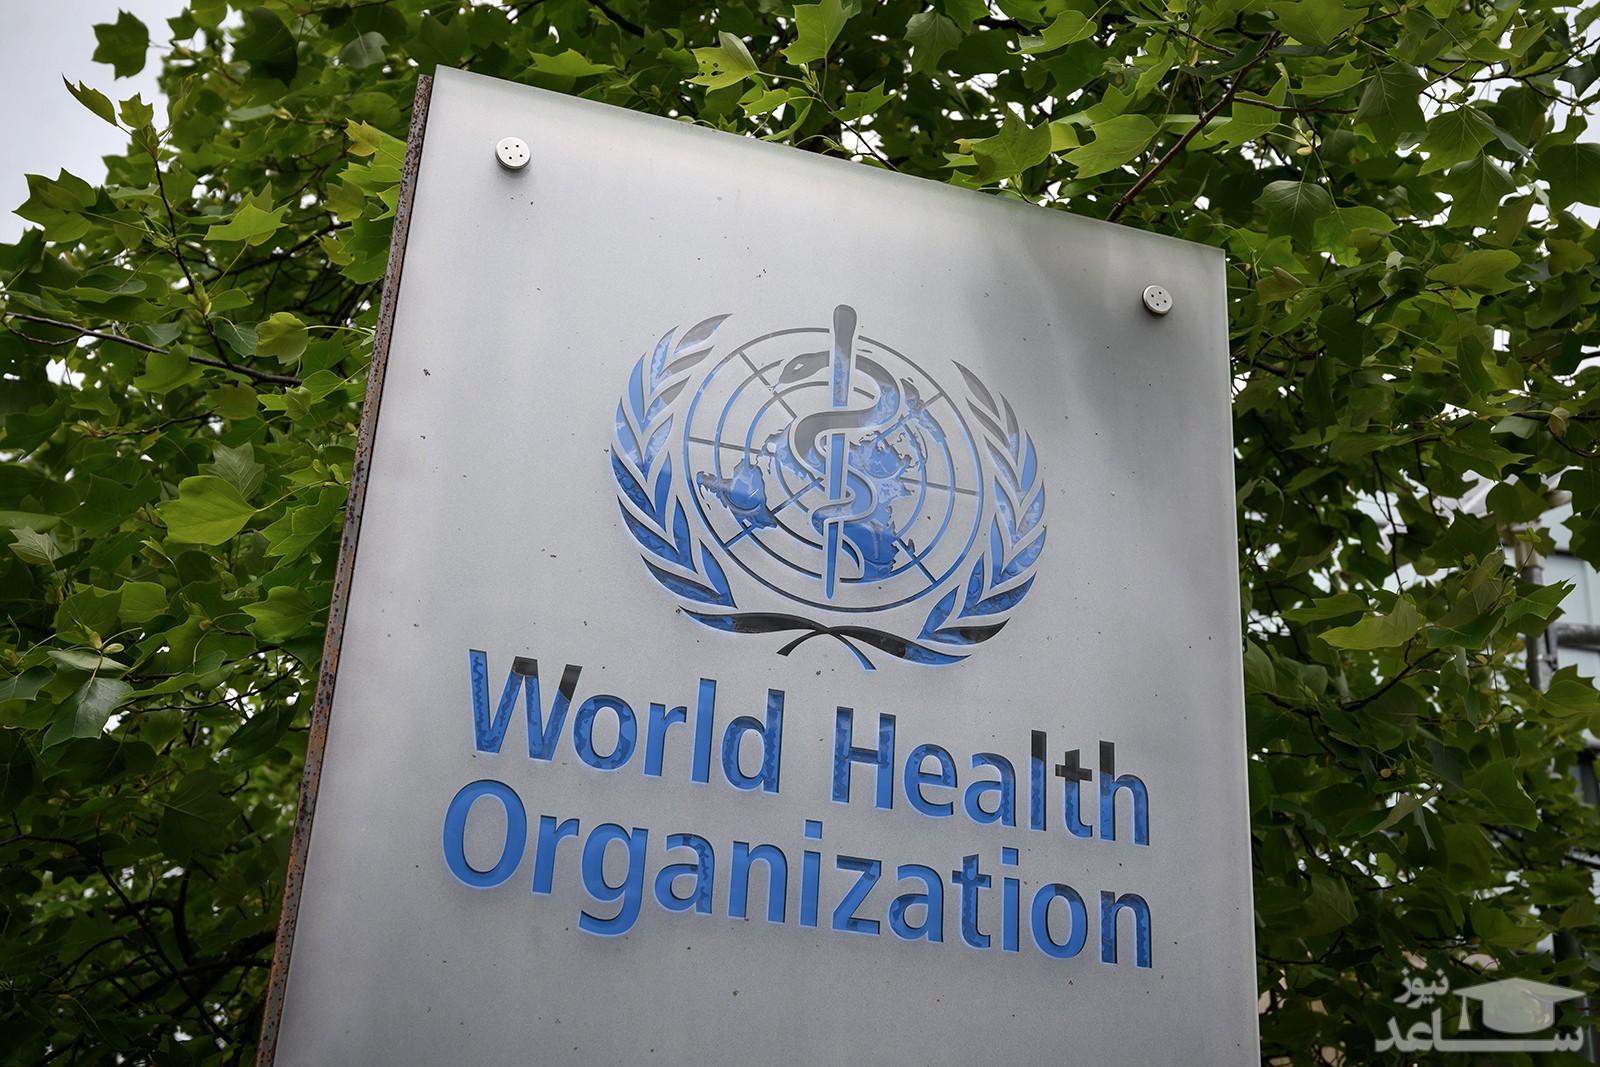 سخنان امیدوار کننده از سازمان جهانی بهداشت درباره مقابله با کرونا